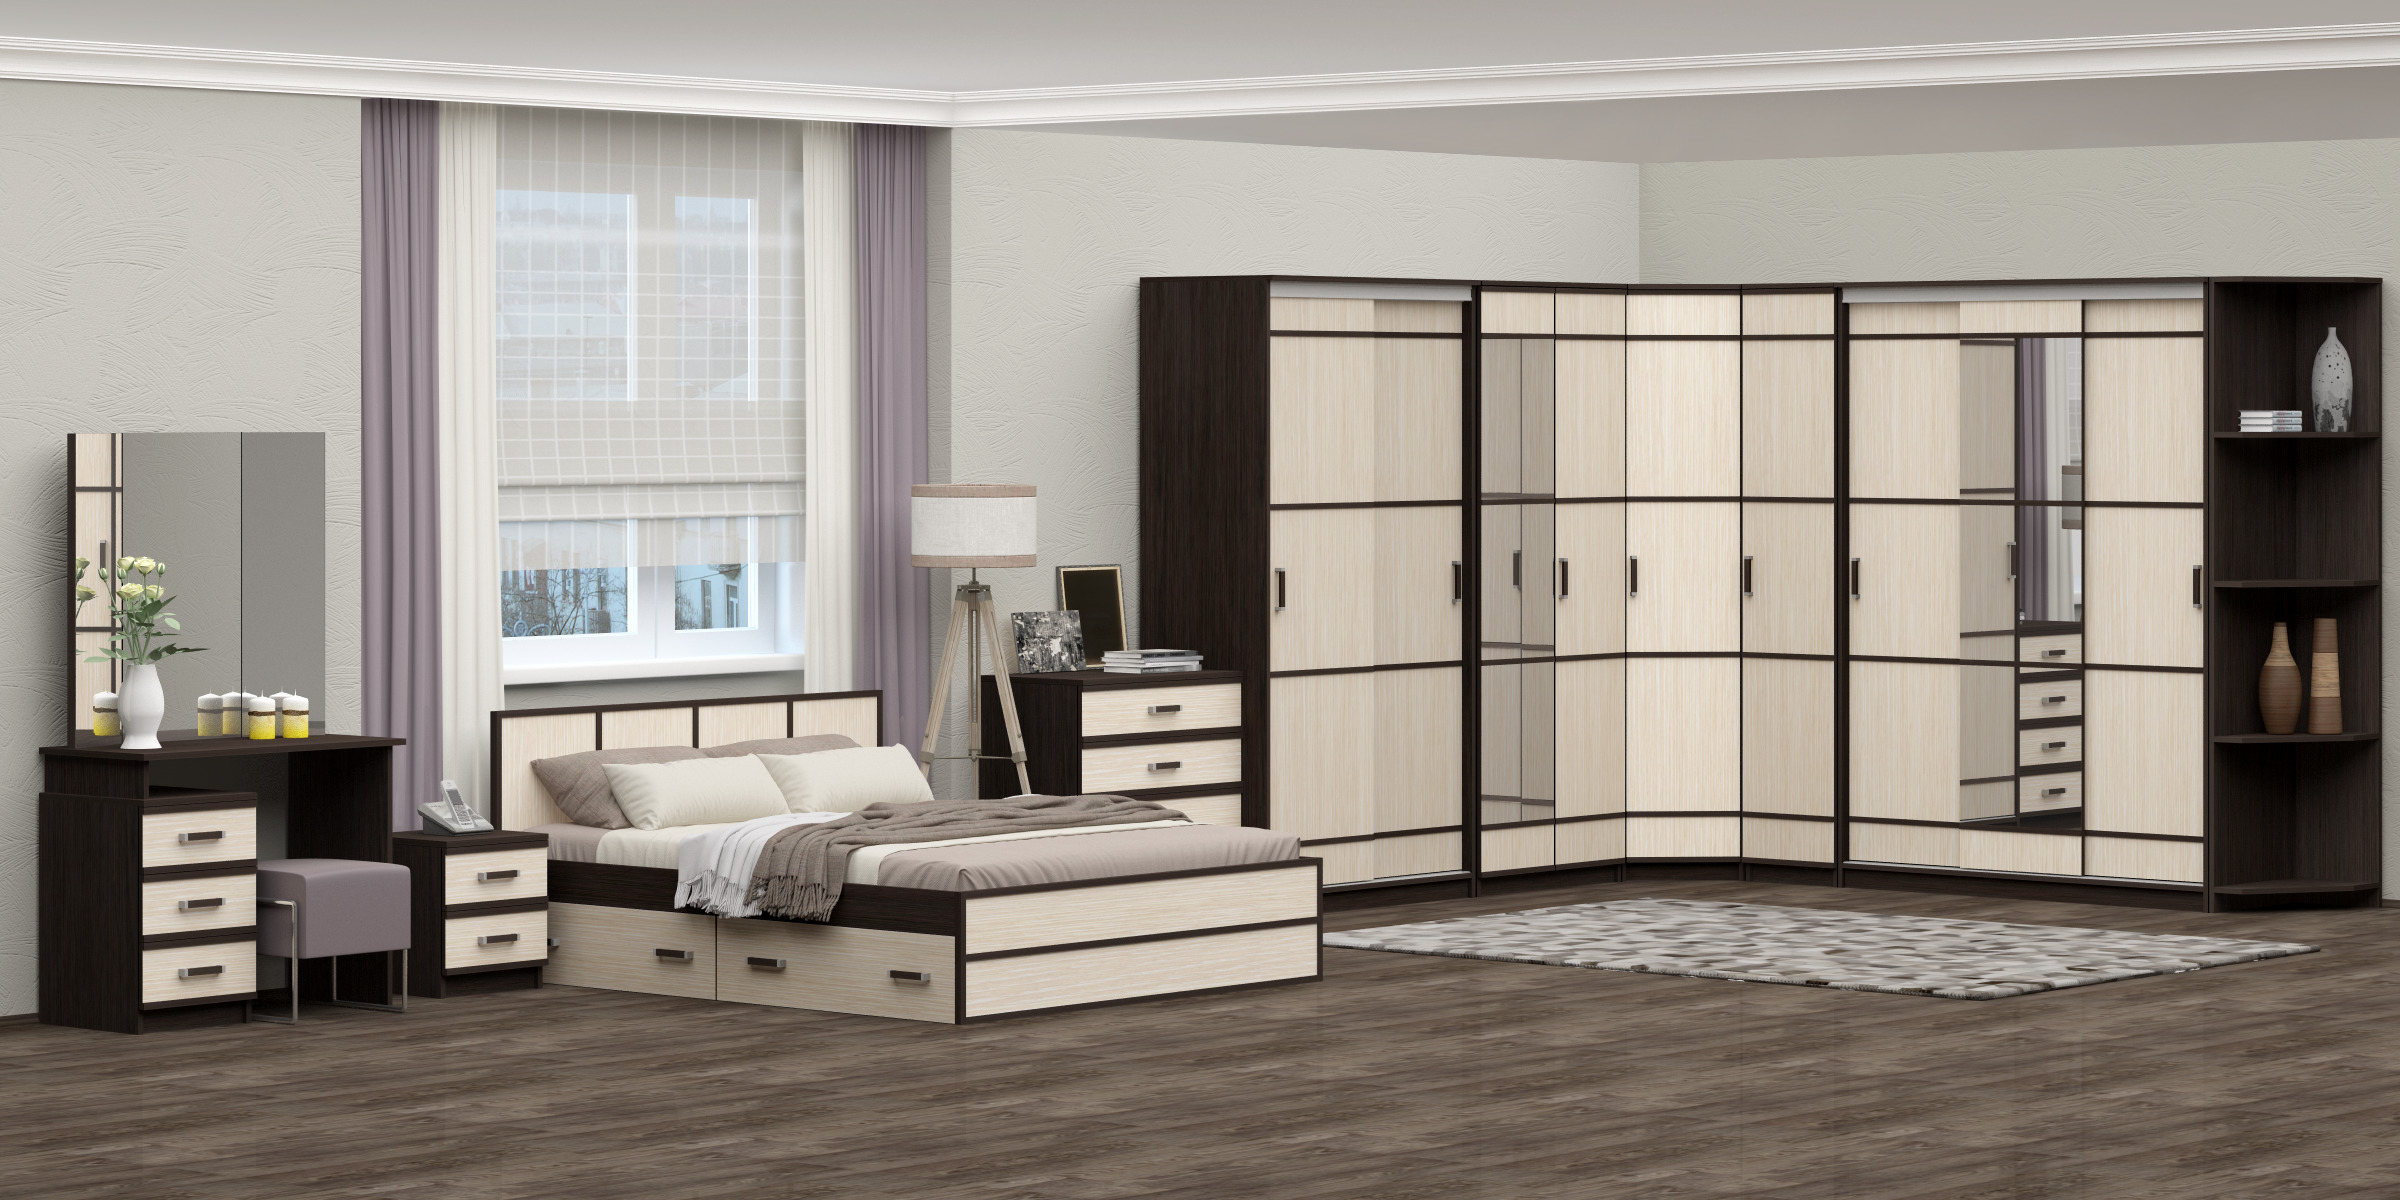 мебель модульные шкафы для спальни